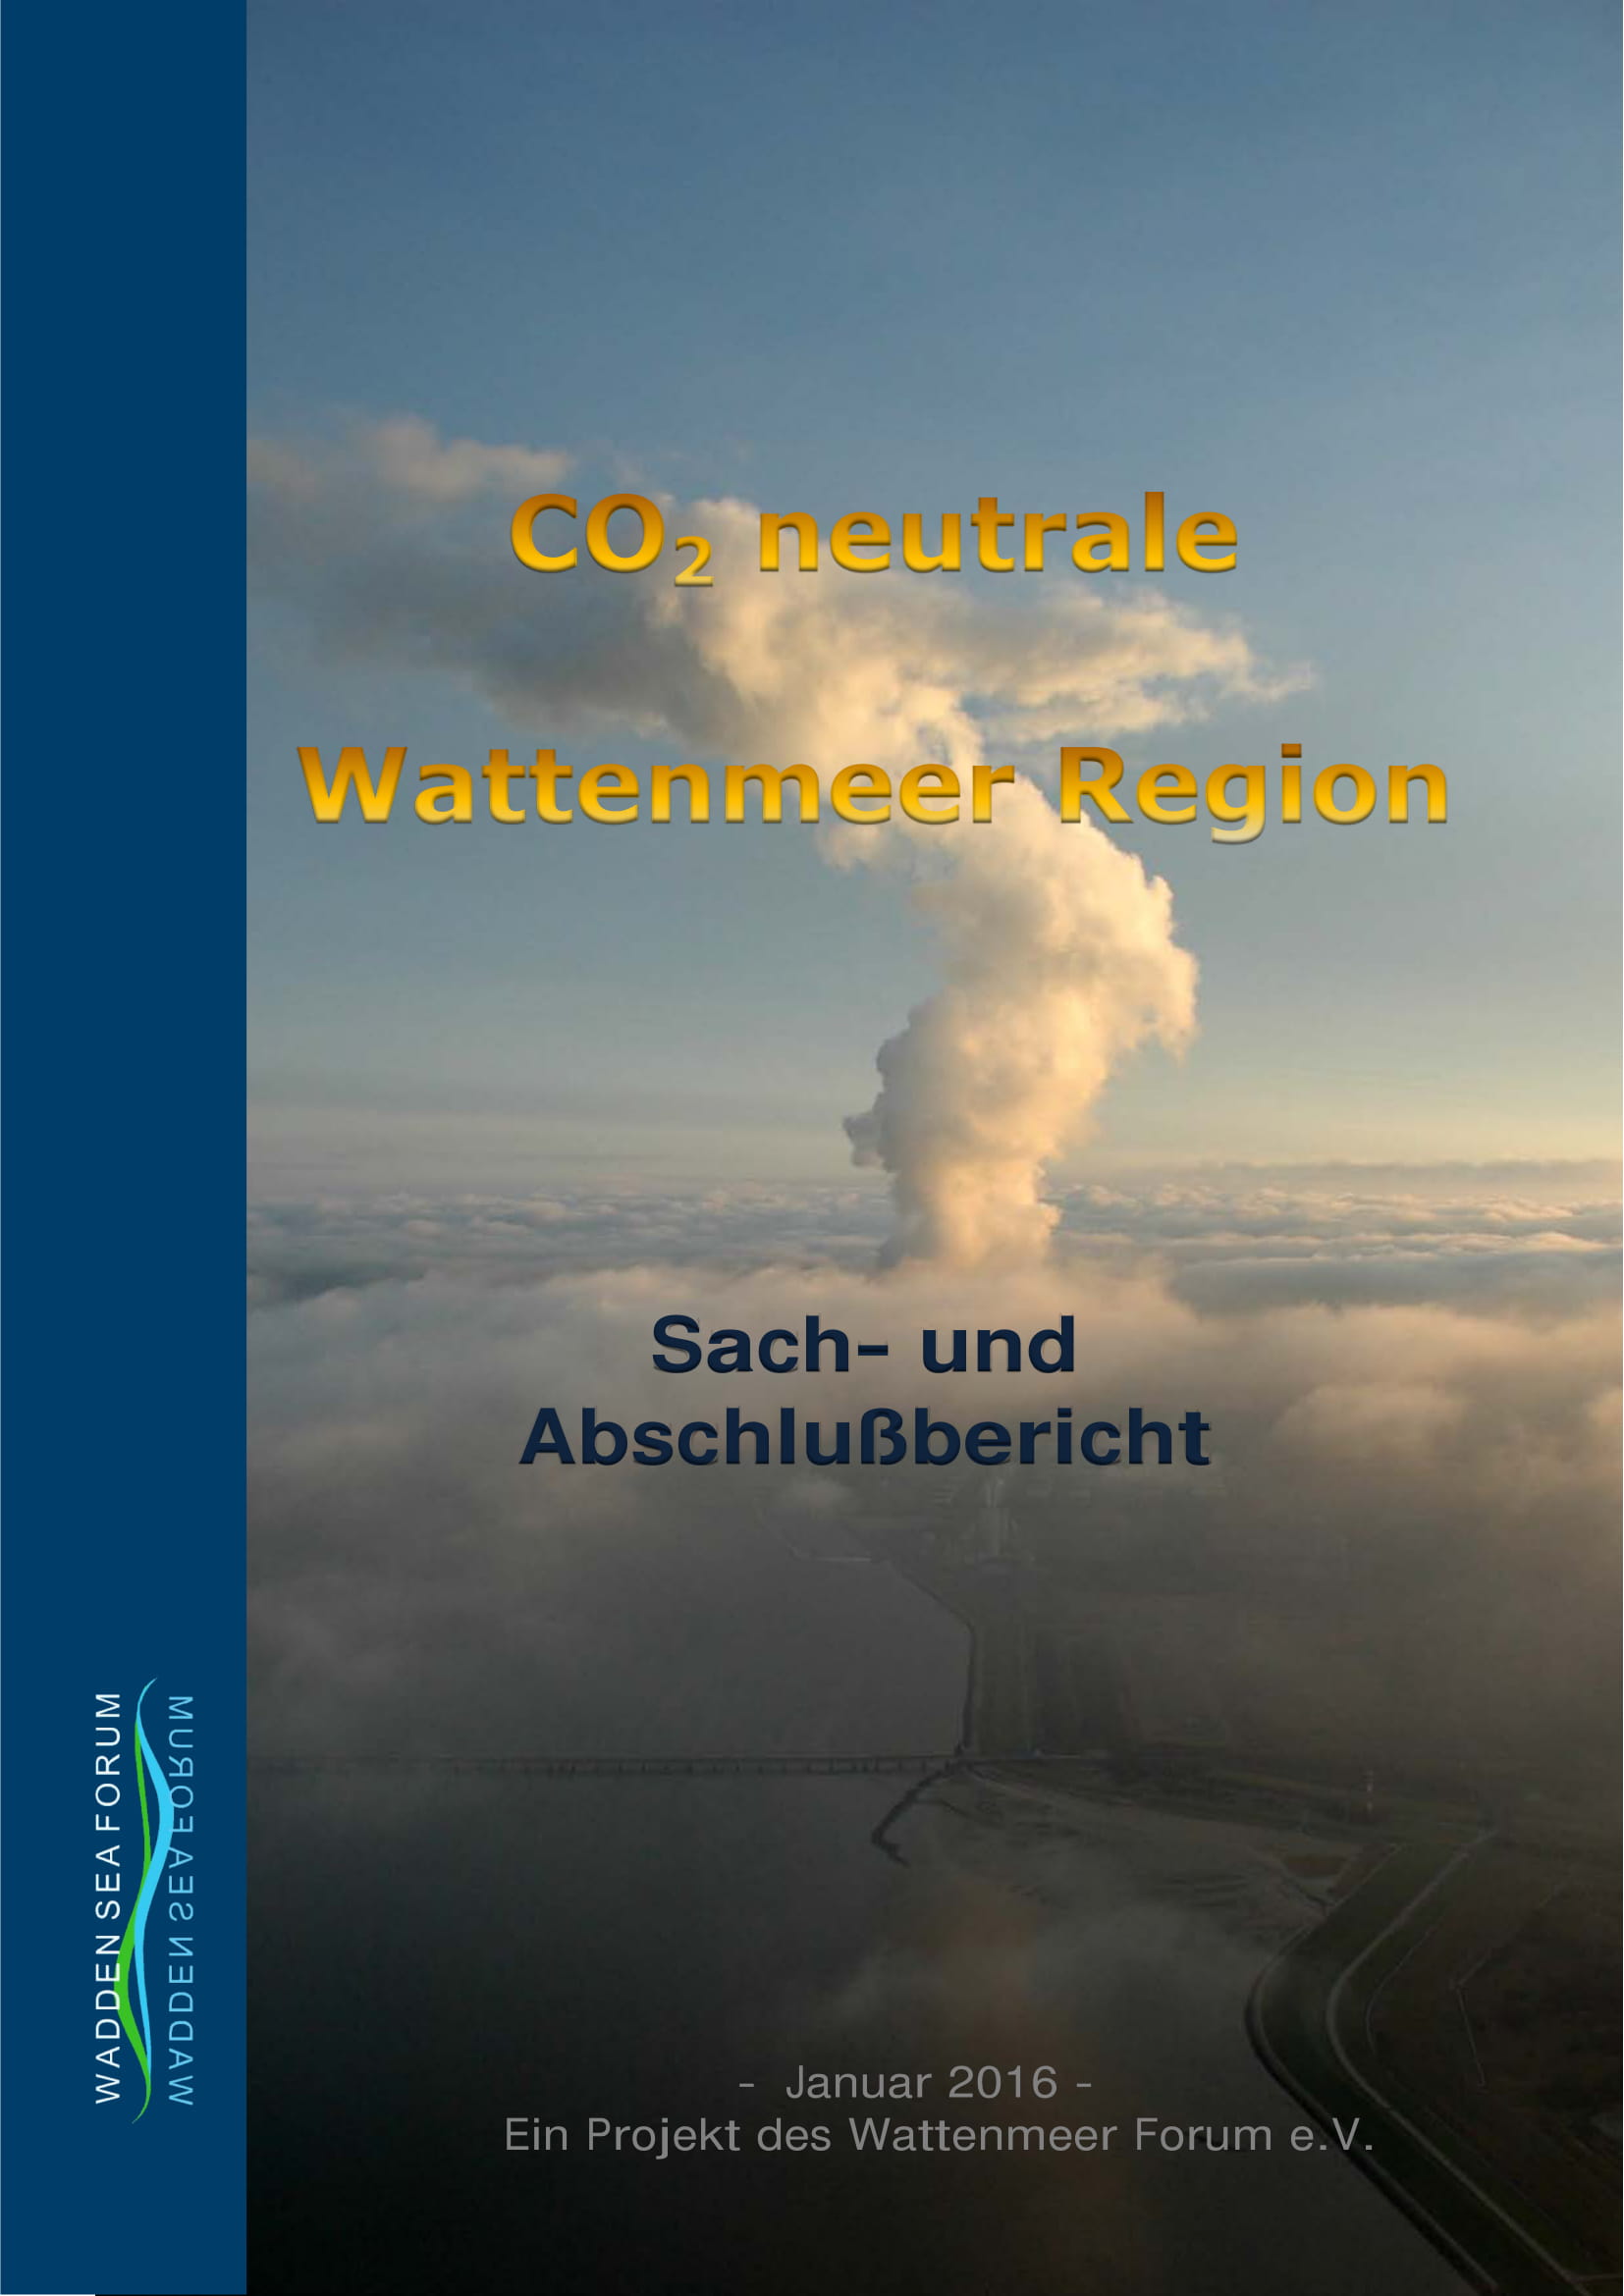 WSF Abschlussbericht CO2 neutrale Wattenmeer Region 2016